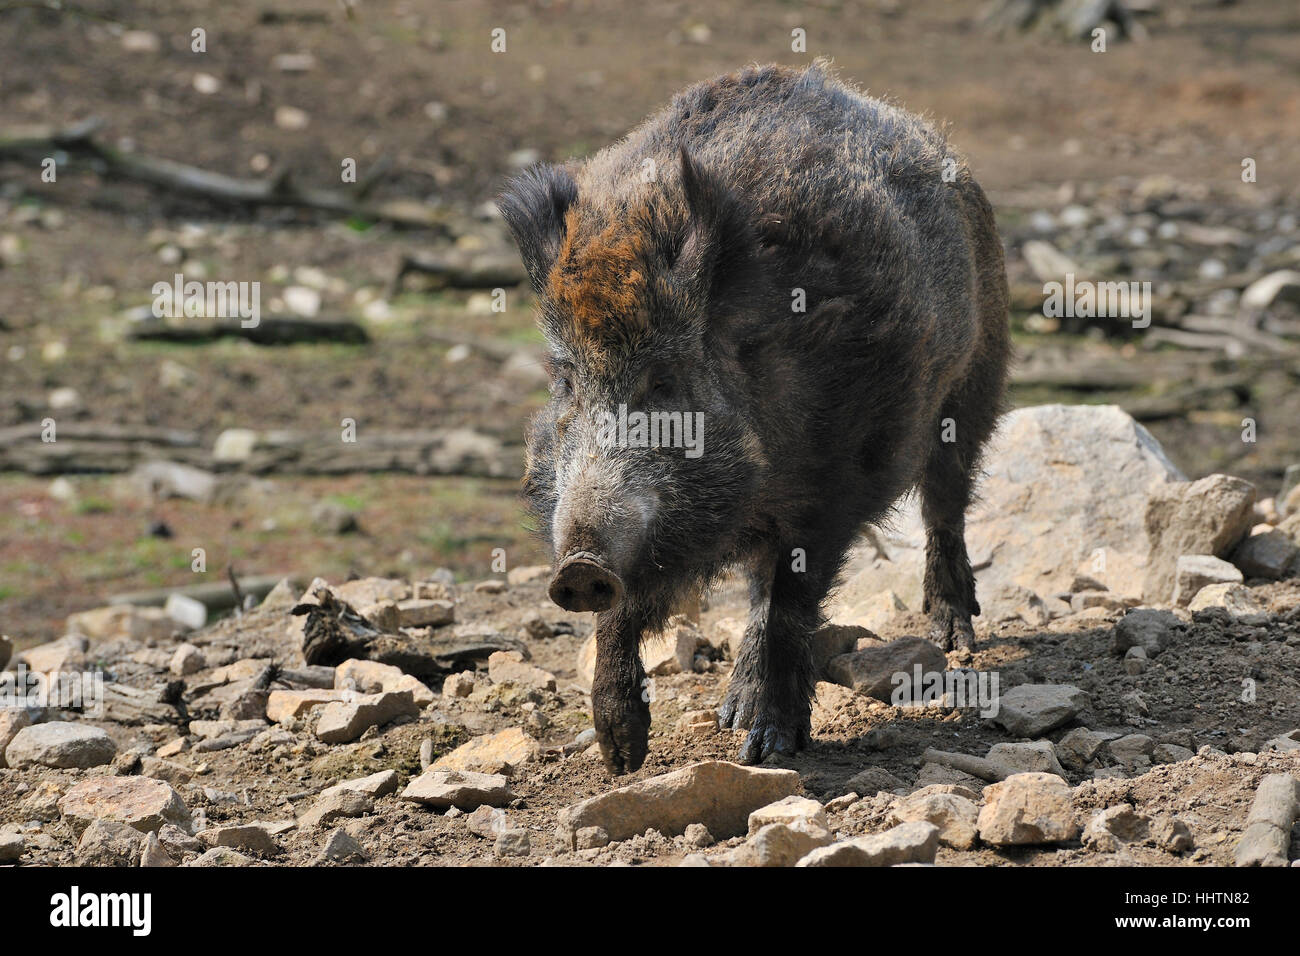 mud, wild boar, pig, wild animal, sow, forest, animal, mammal, wild, portrait, Stock Photo